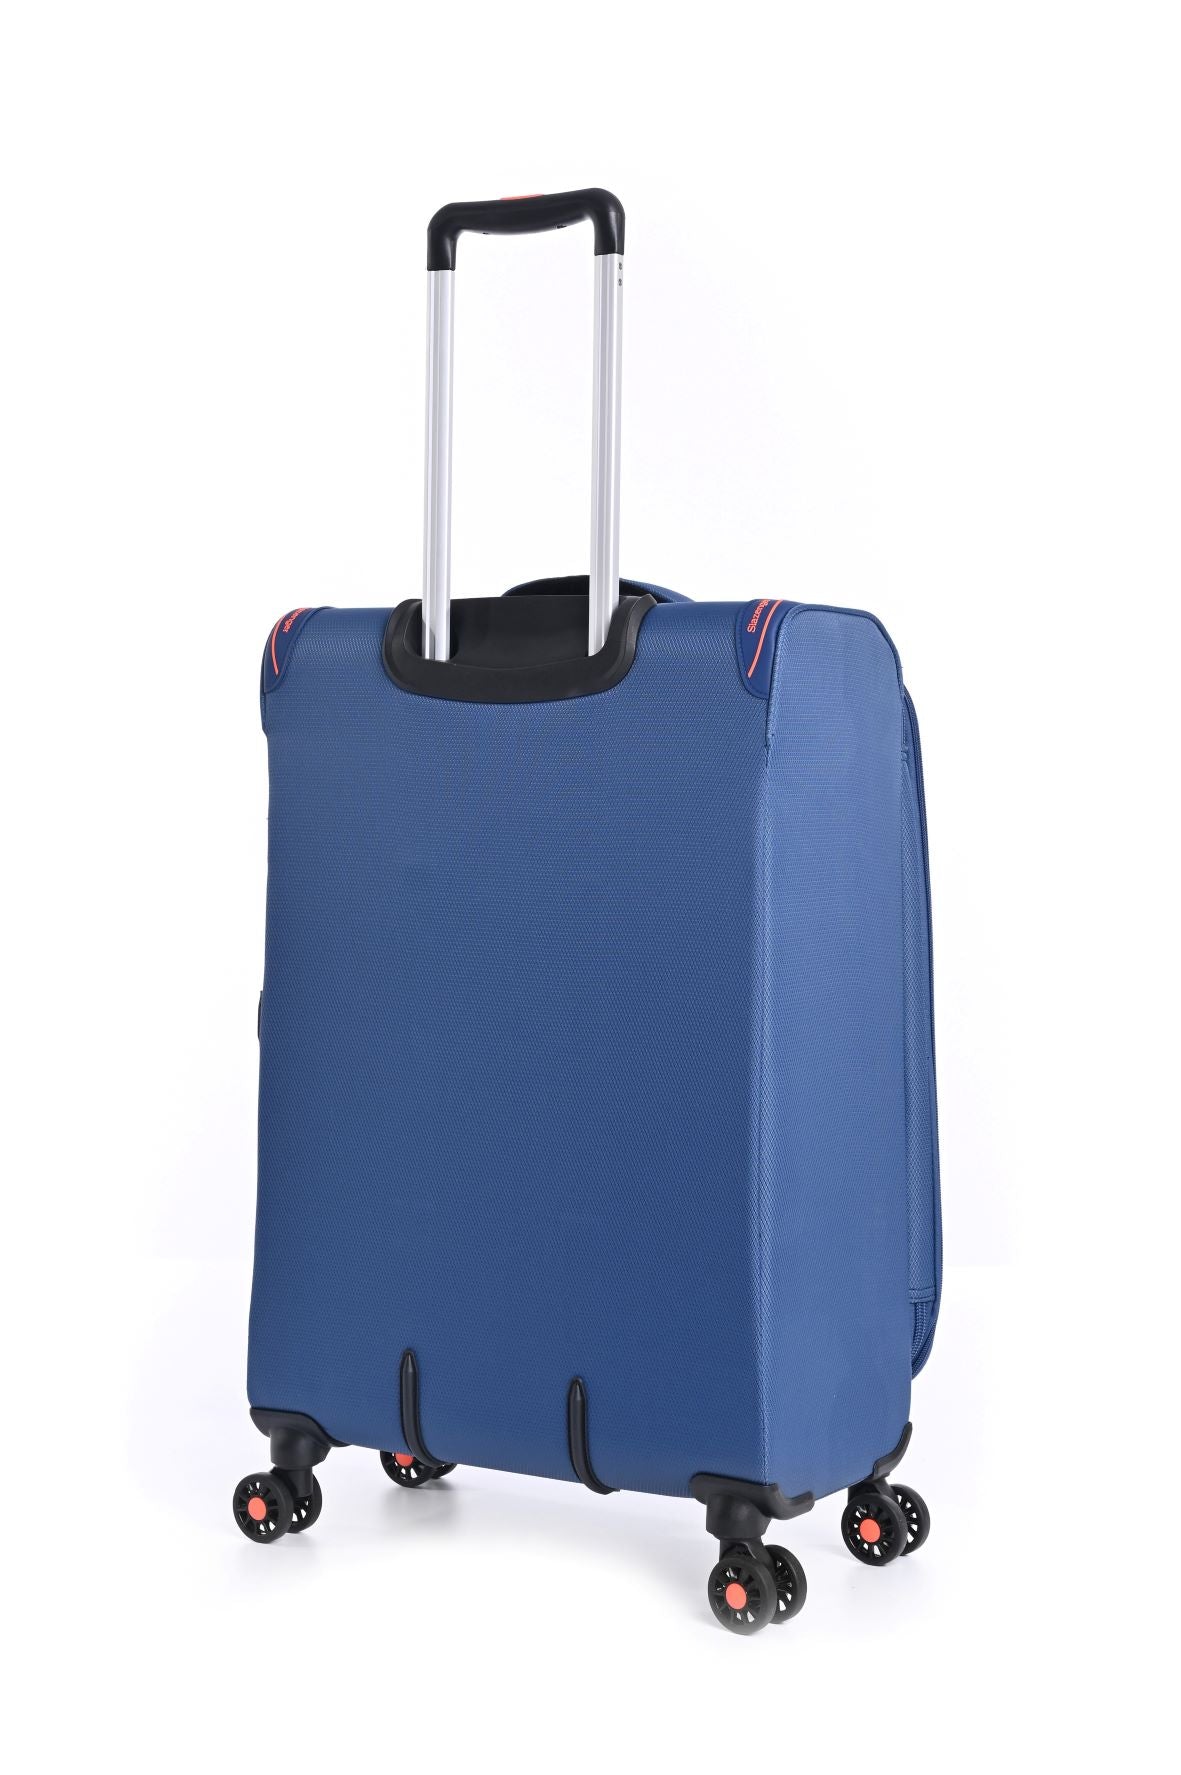 ✮✮ לייט פרימיום ✮✮ סט 3 מזוודות בד קלות במיוחד דגם B-lite מבית חברת היוקרה Slazenger